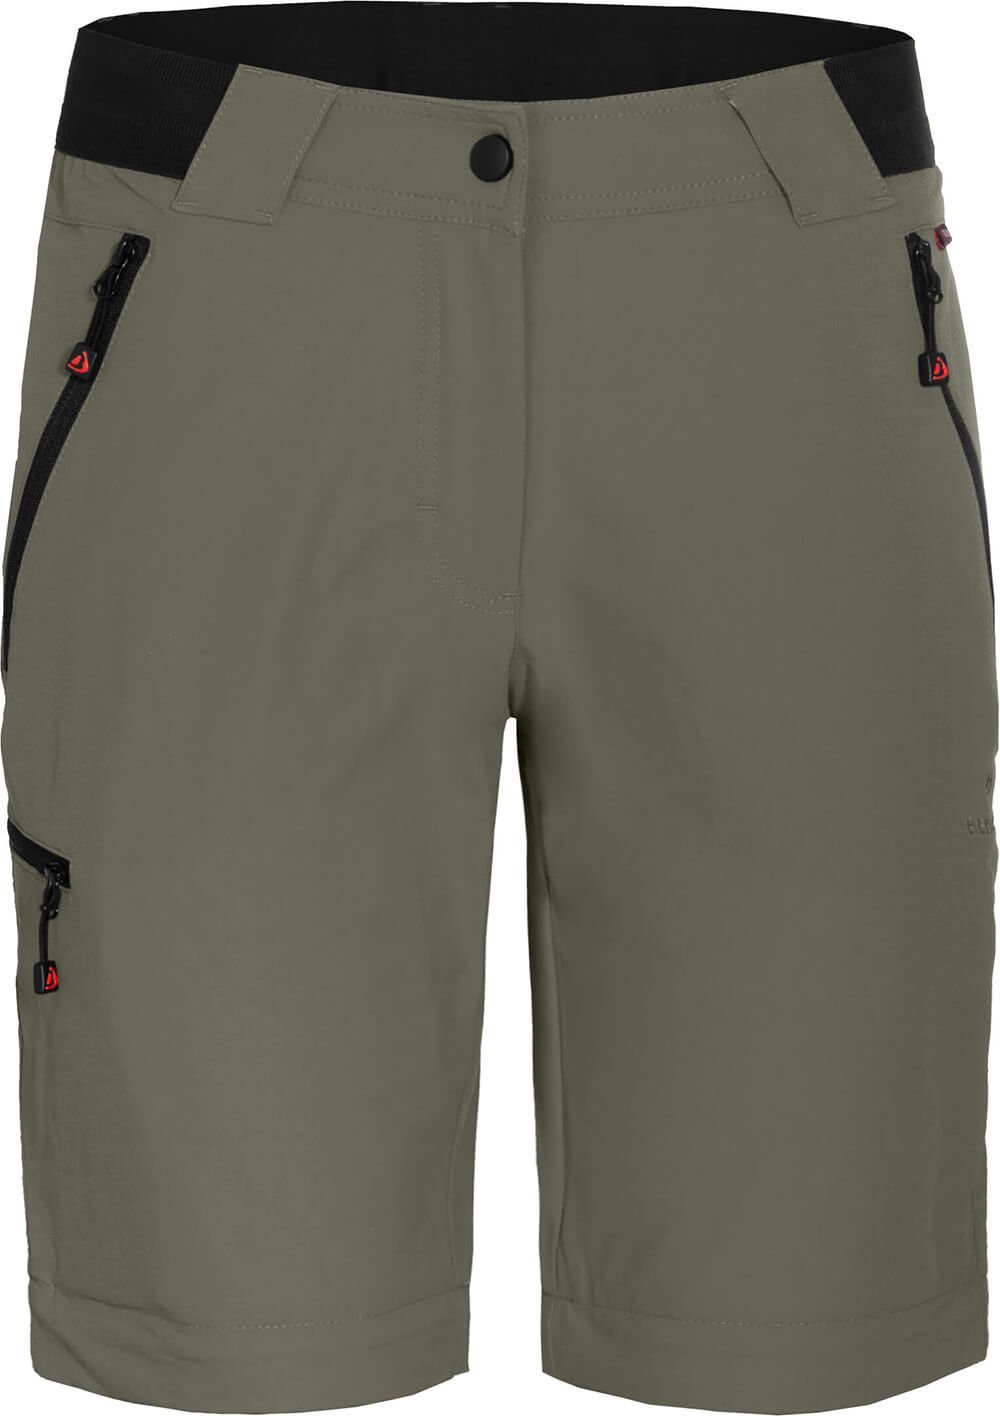 Bergson Zip-off-Hose VIDAA COMFORT Zipp-Off grau/grün Wanderhose, Damen leicht, strapazierfähig, Kurzgrößen